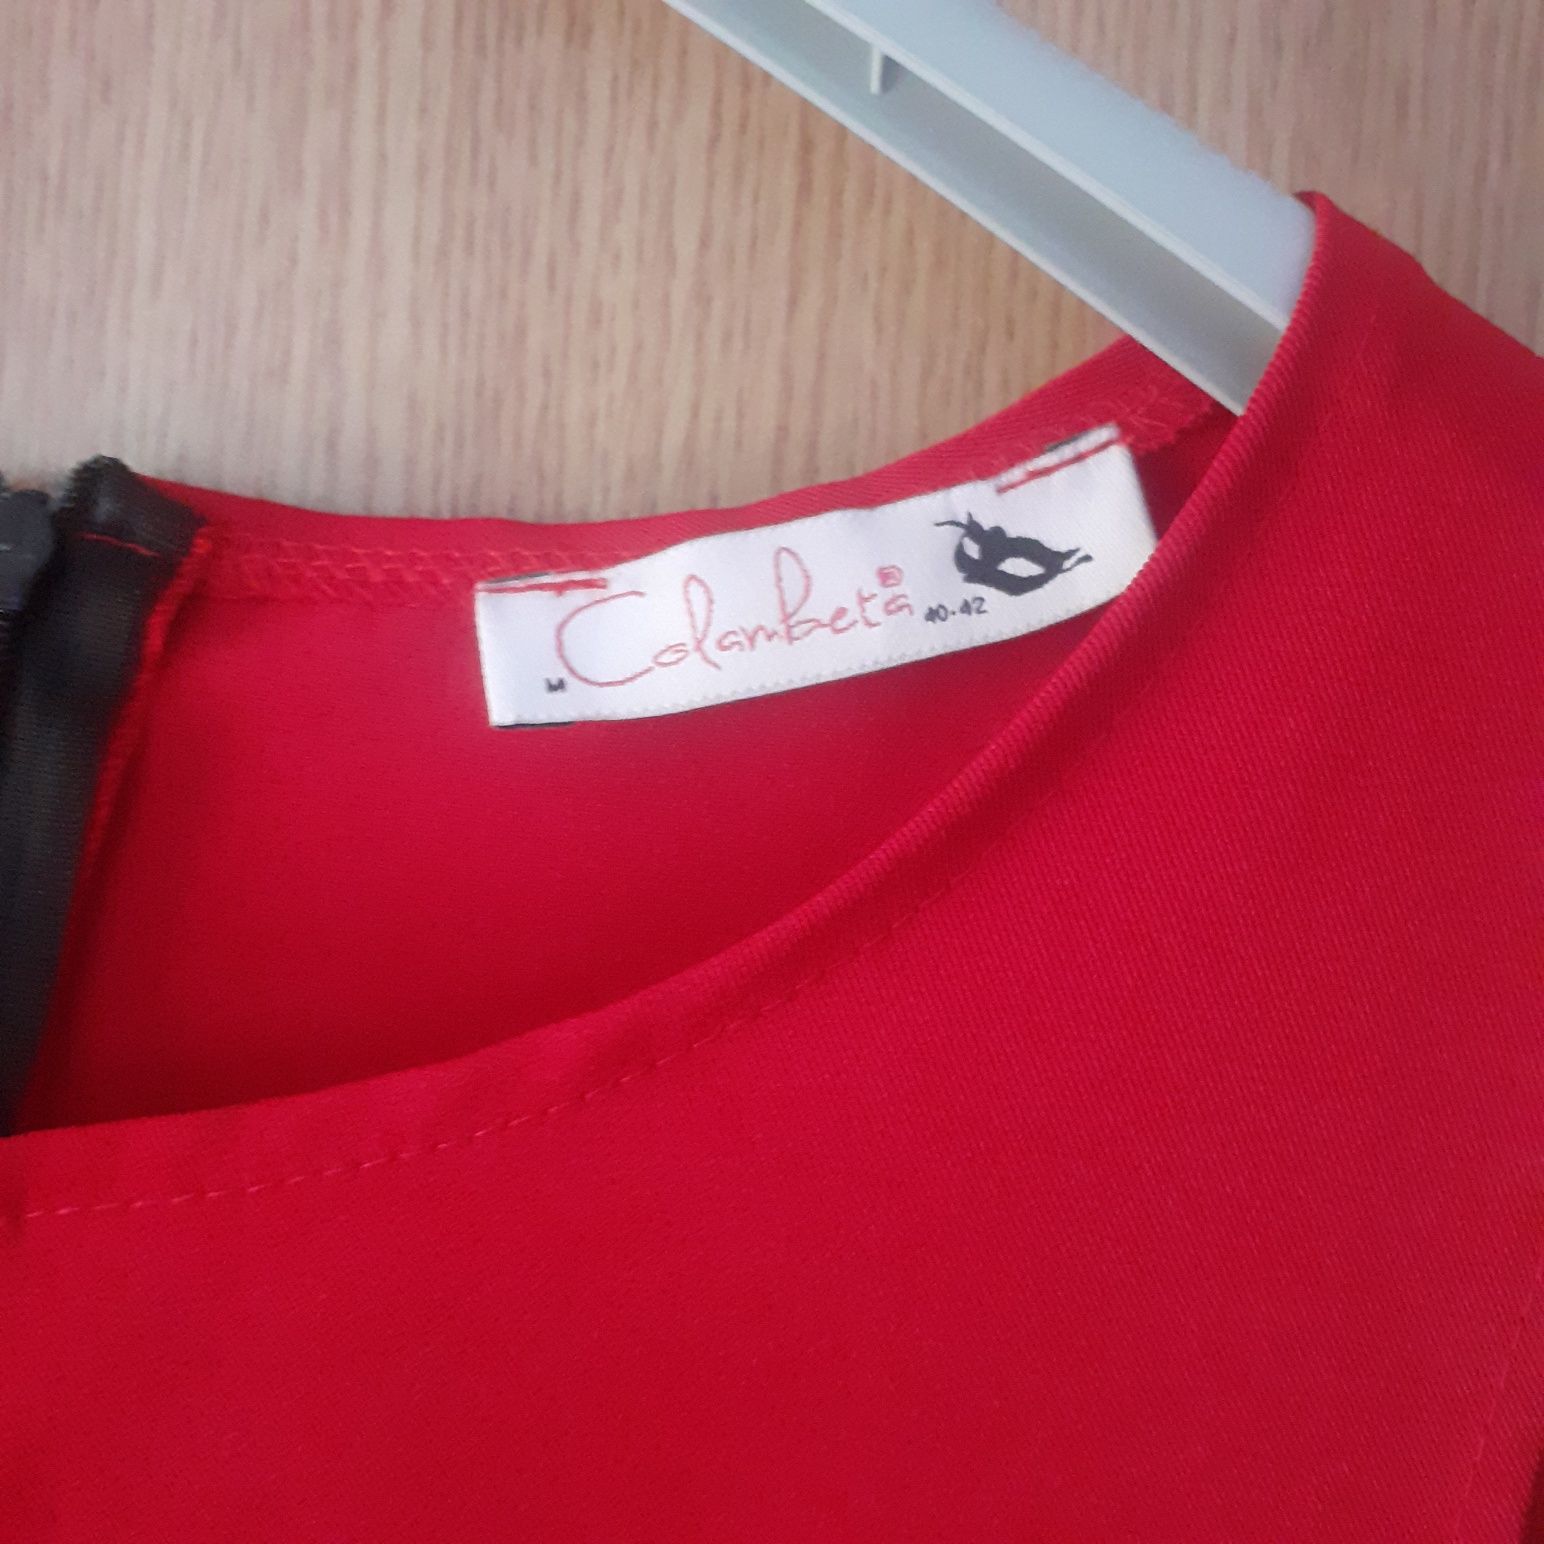 Vând rochita rosie mărimea 40-42 în stare foarte bună preț 60lei